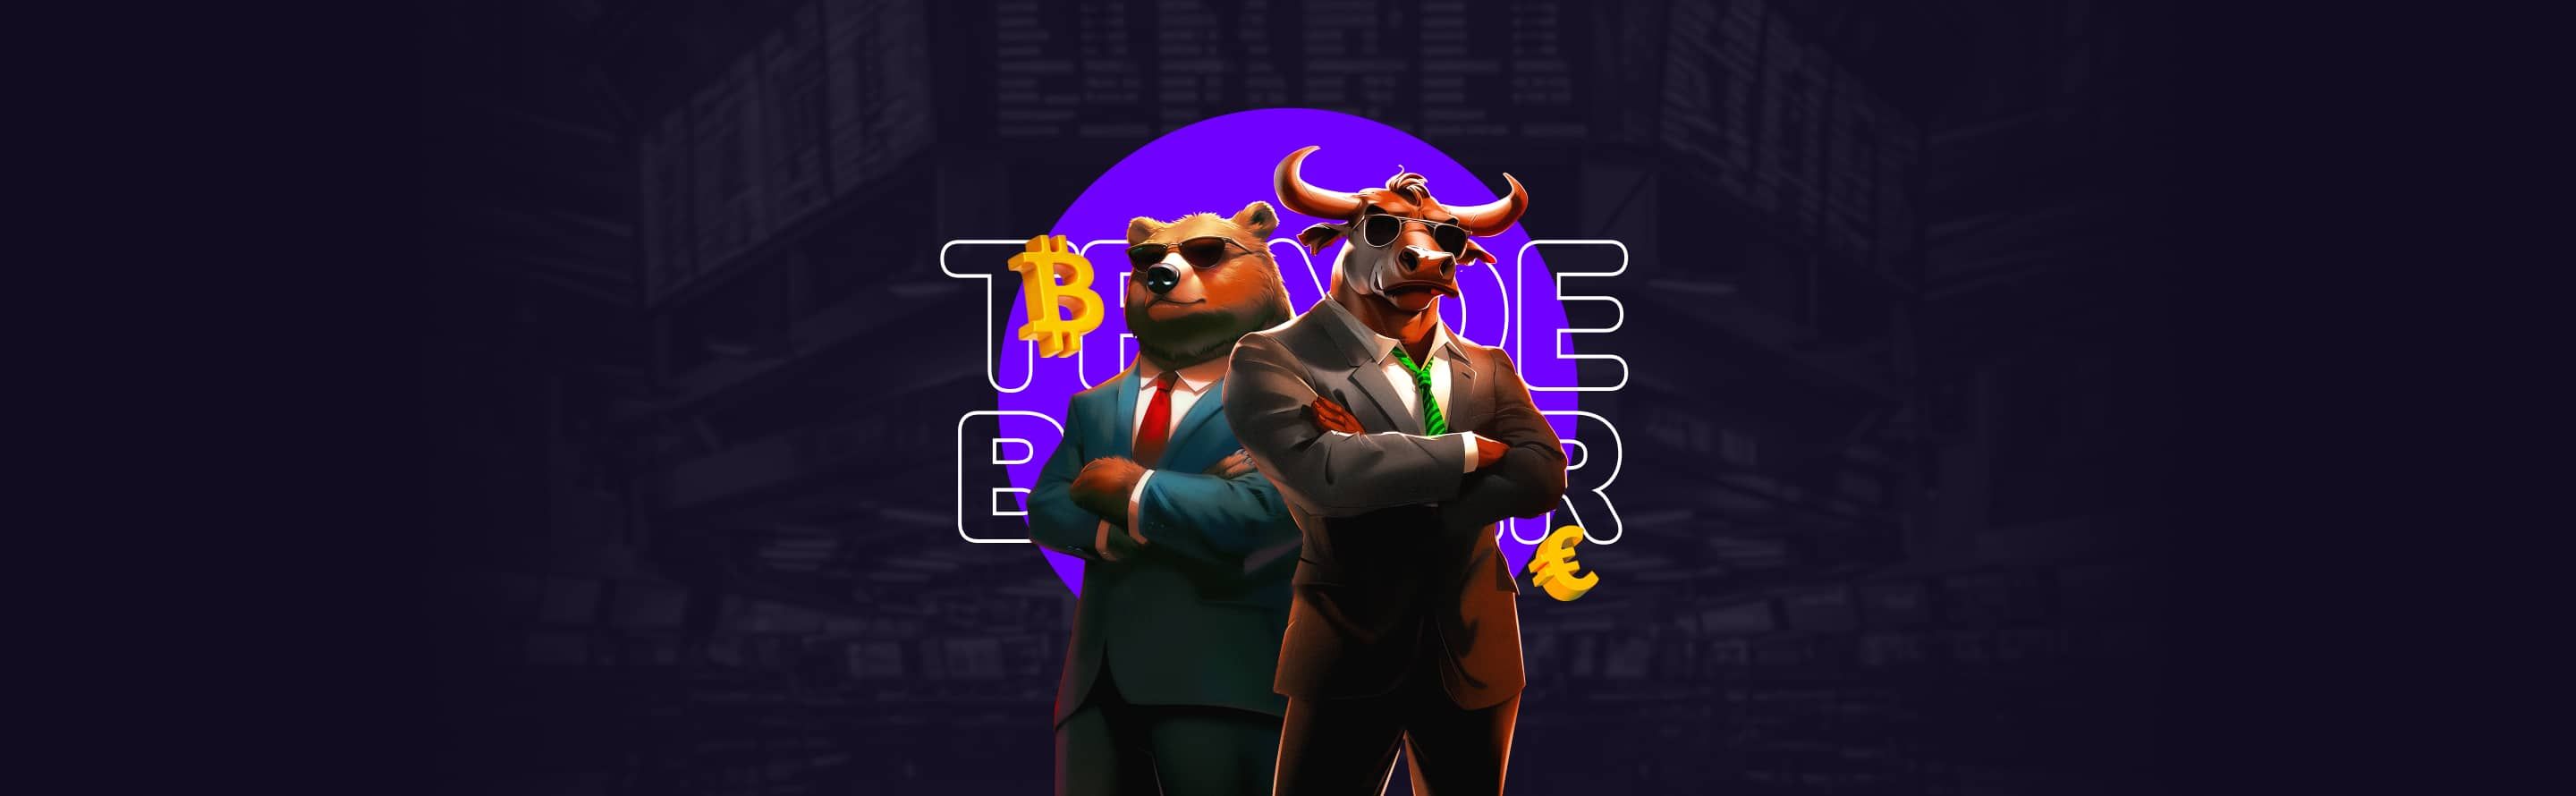 Trade Blazer | Gameplay Banner